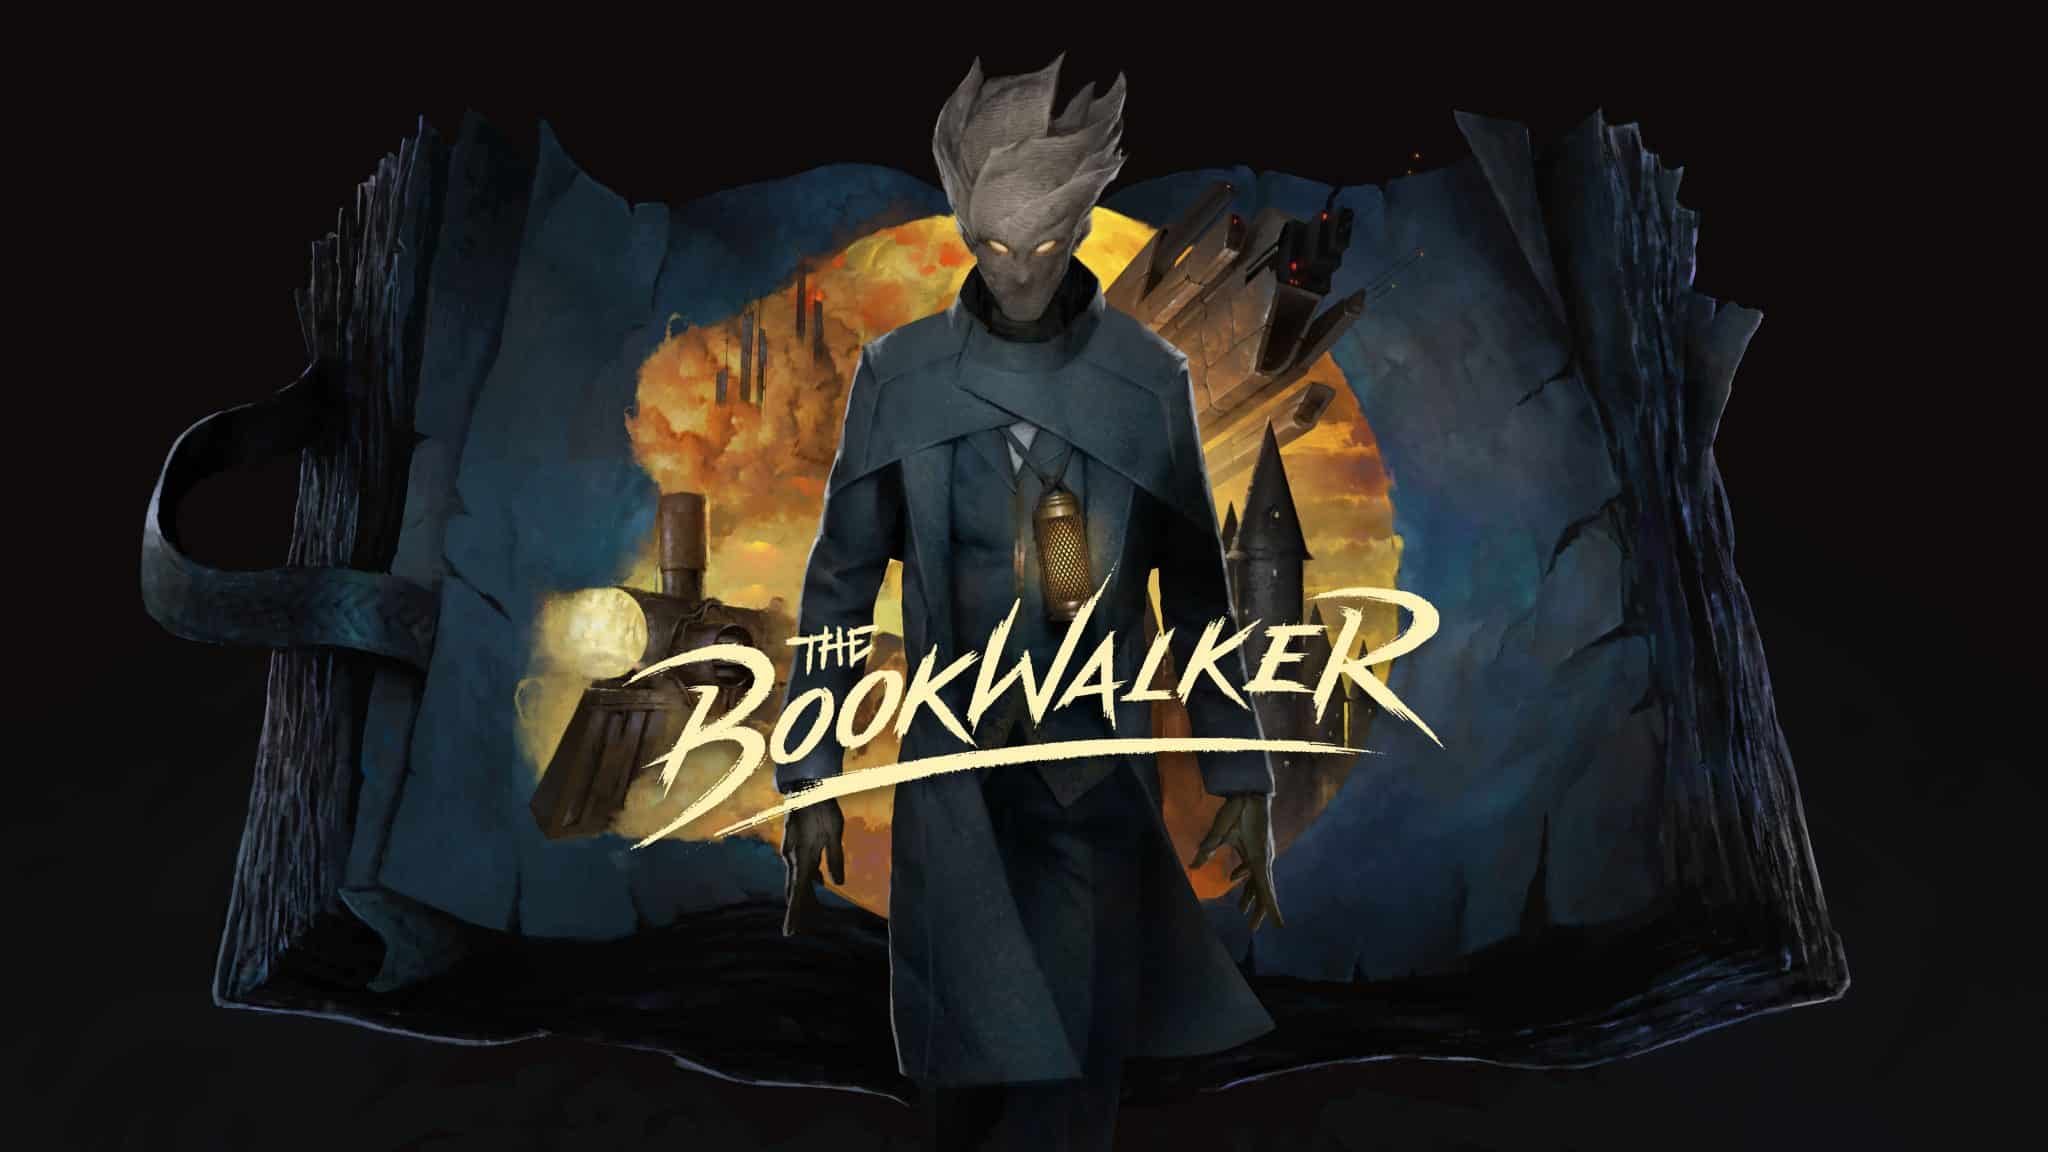 The Bookwalker artwork